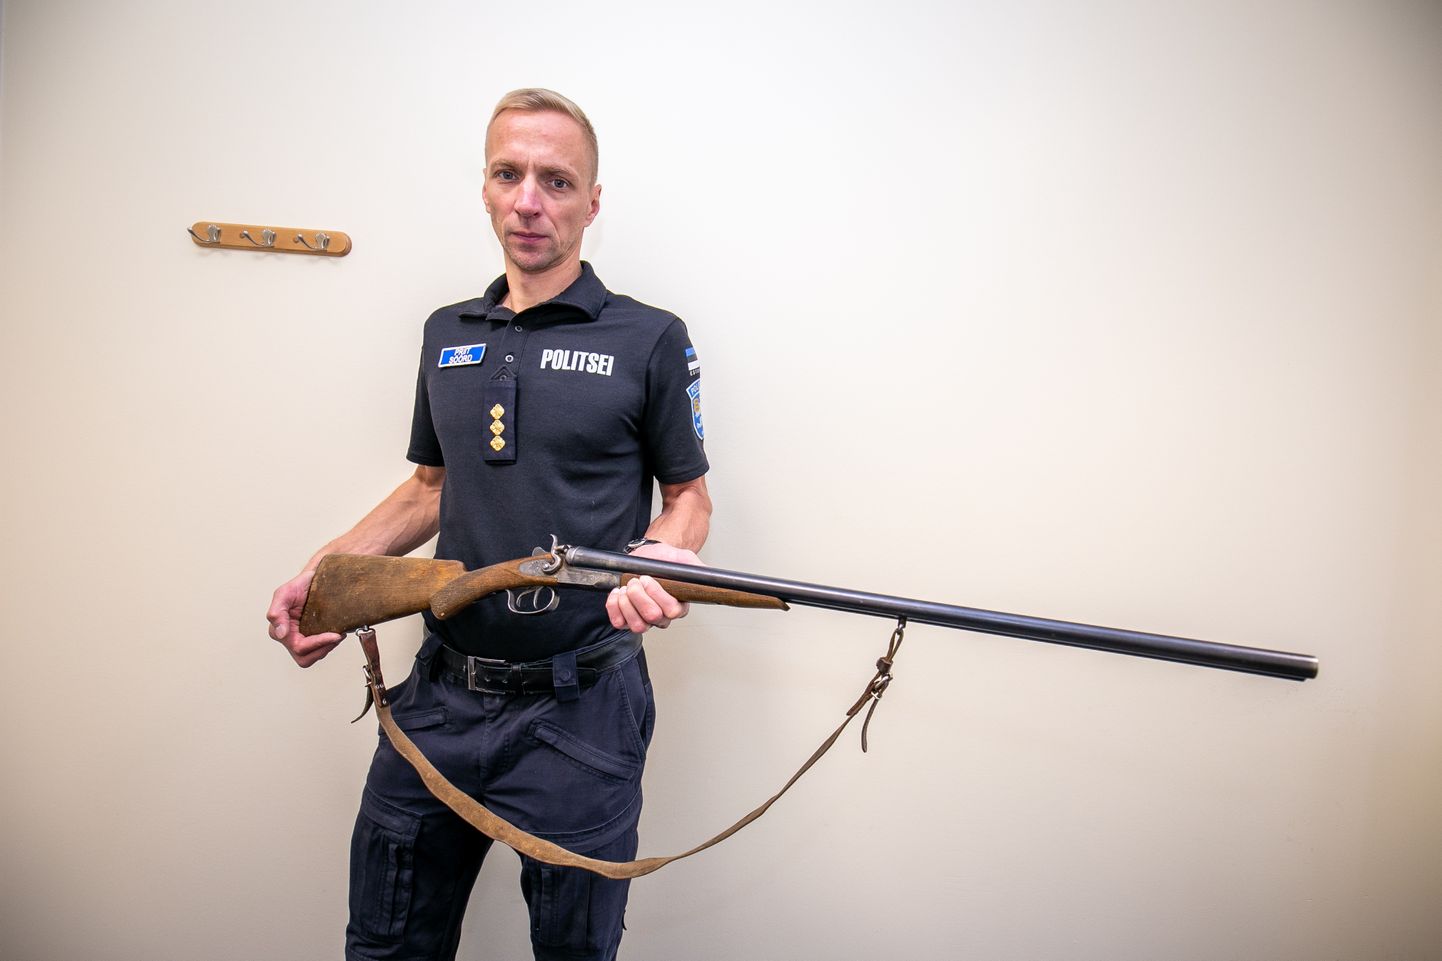 Paide politseijaoskonna piirkonnavanem Priit Söörd näitab politseimajja toodud ebaseaduslikku relva, mis on esmapilgul täiesti korralik jahipüss.